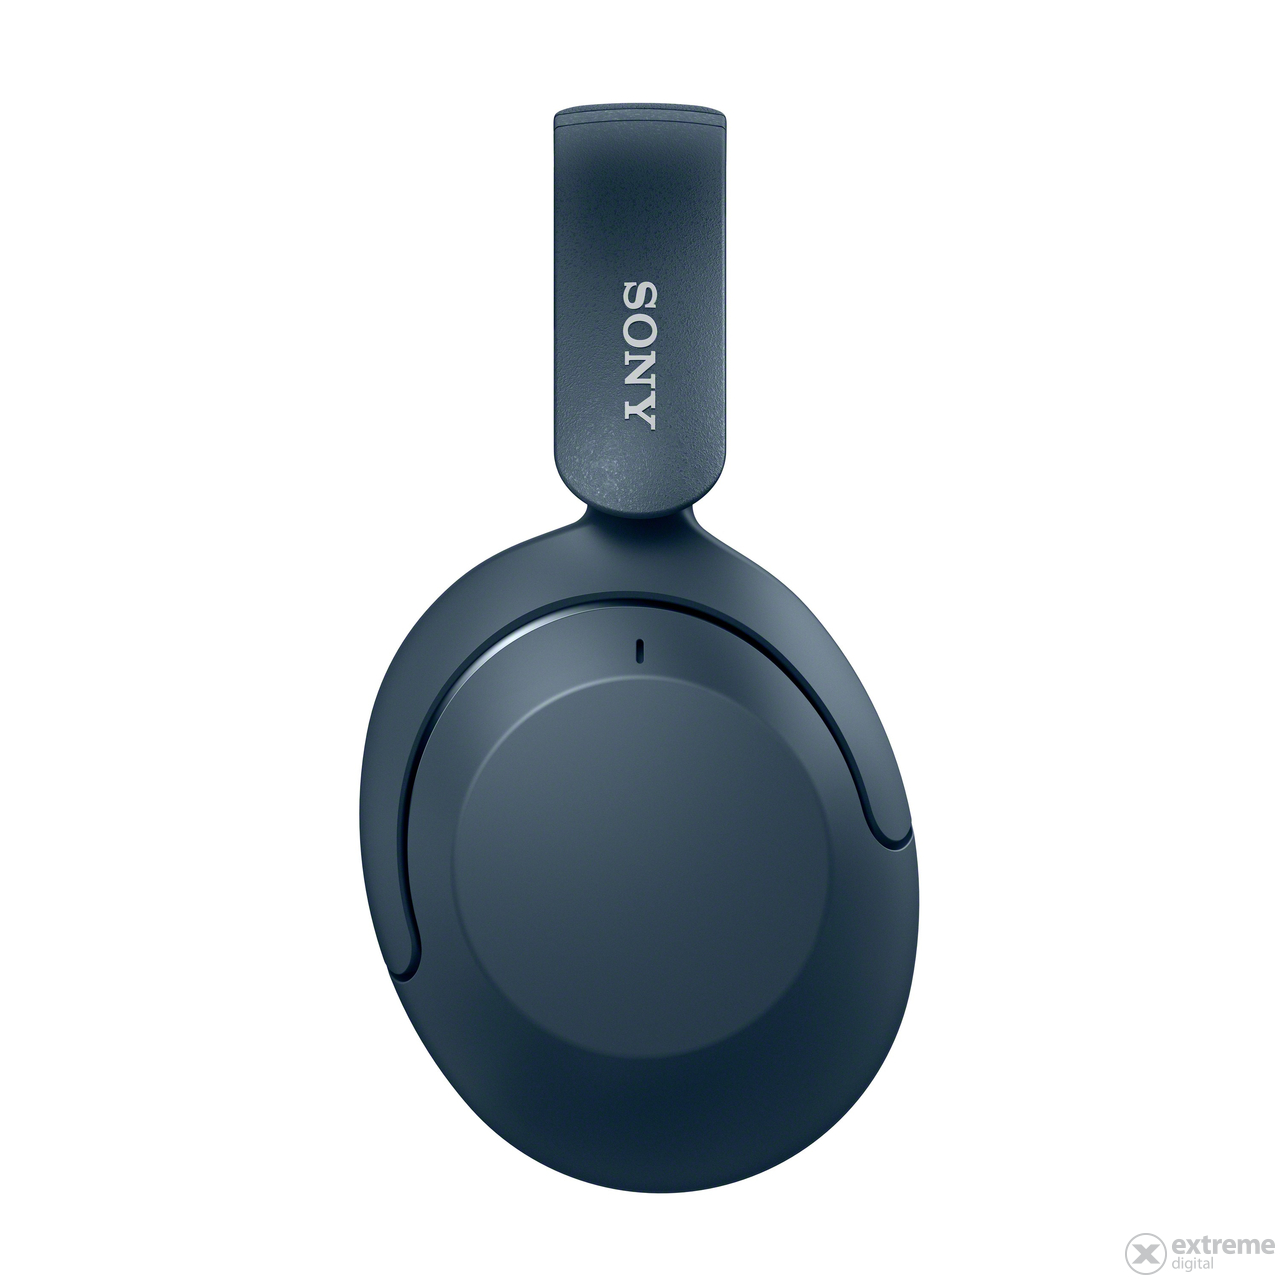 Sony WHXB910N Extra Bass ANC Bluetooth sluchátka, modré